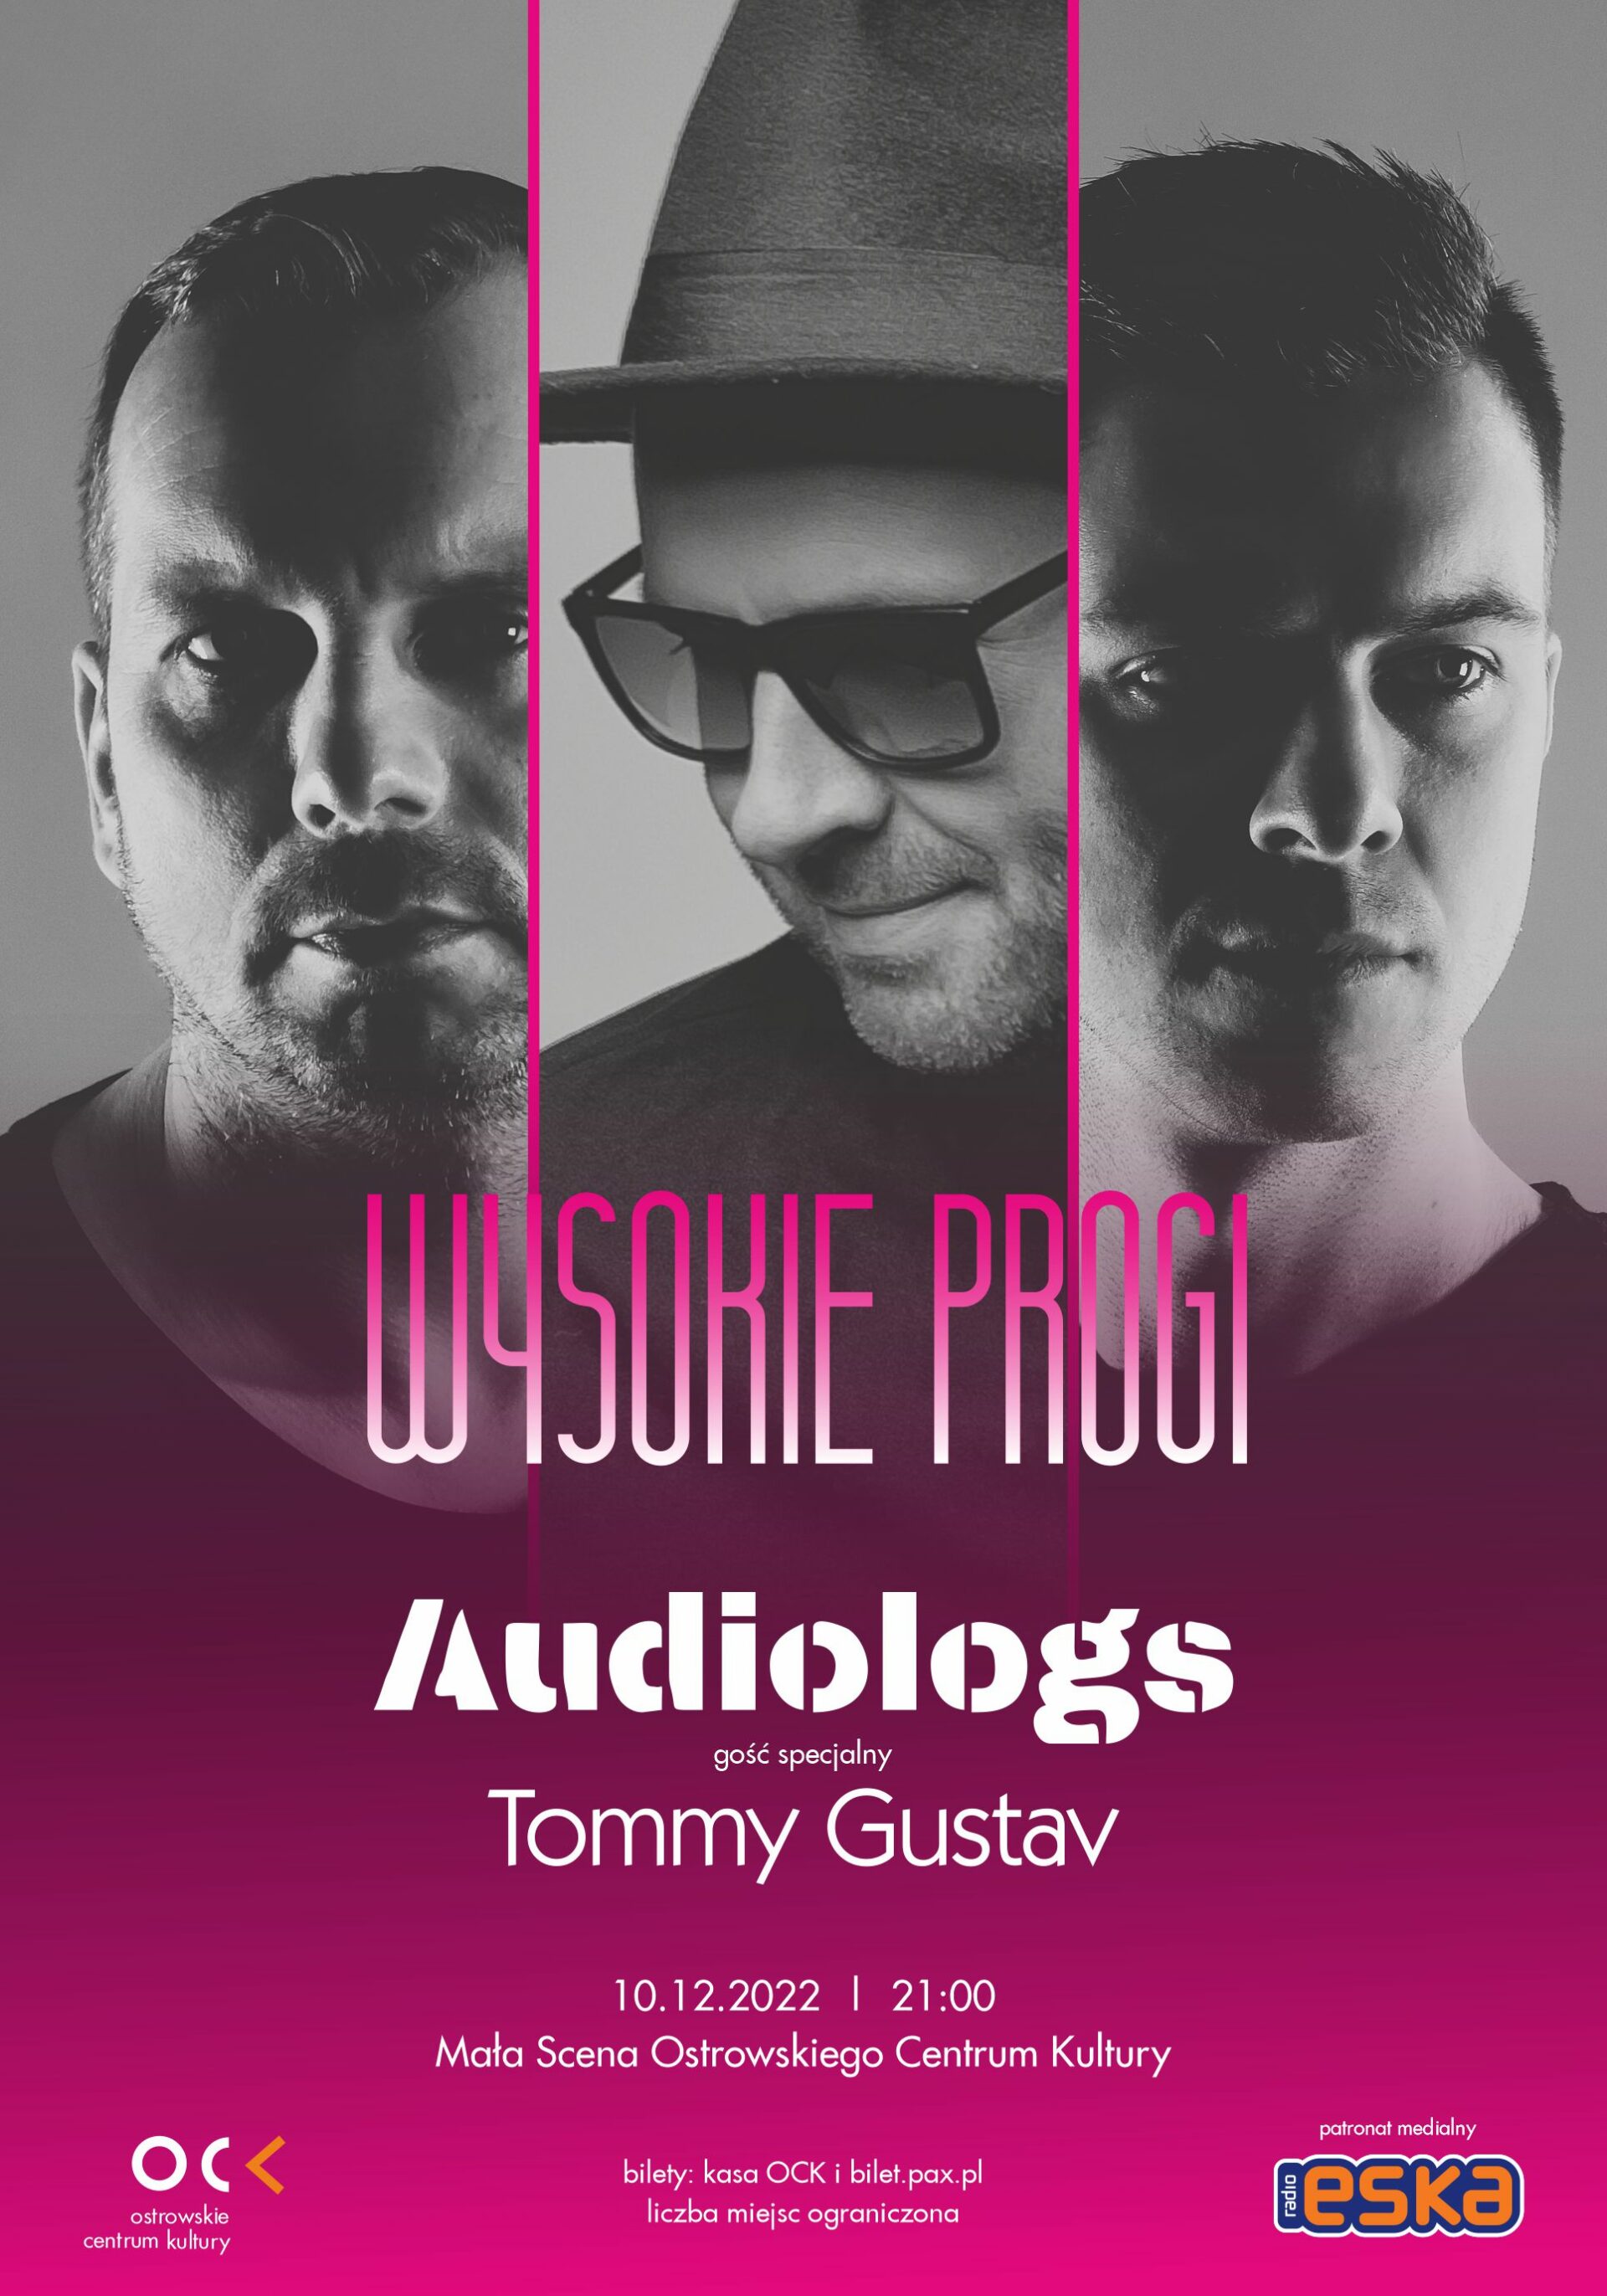 WYSOKIE PROGI | Audiologs i gość specjalny Tommy Gustav